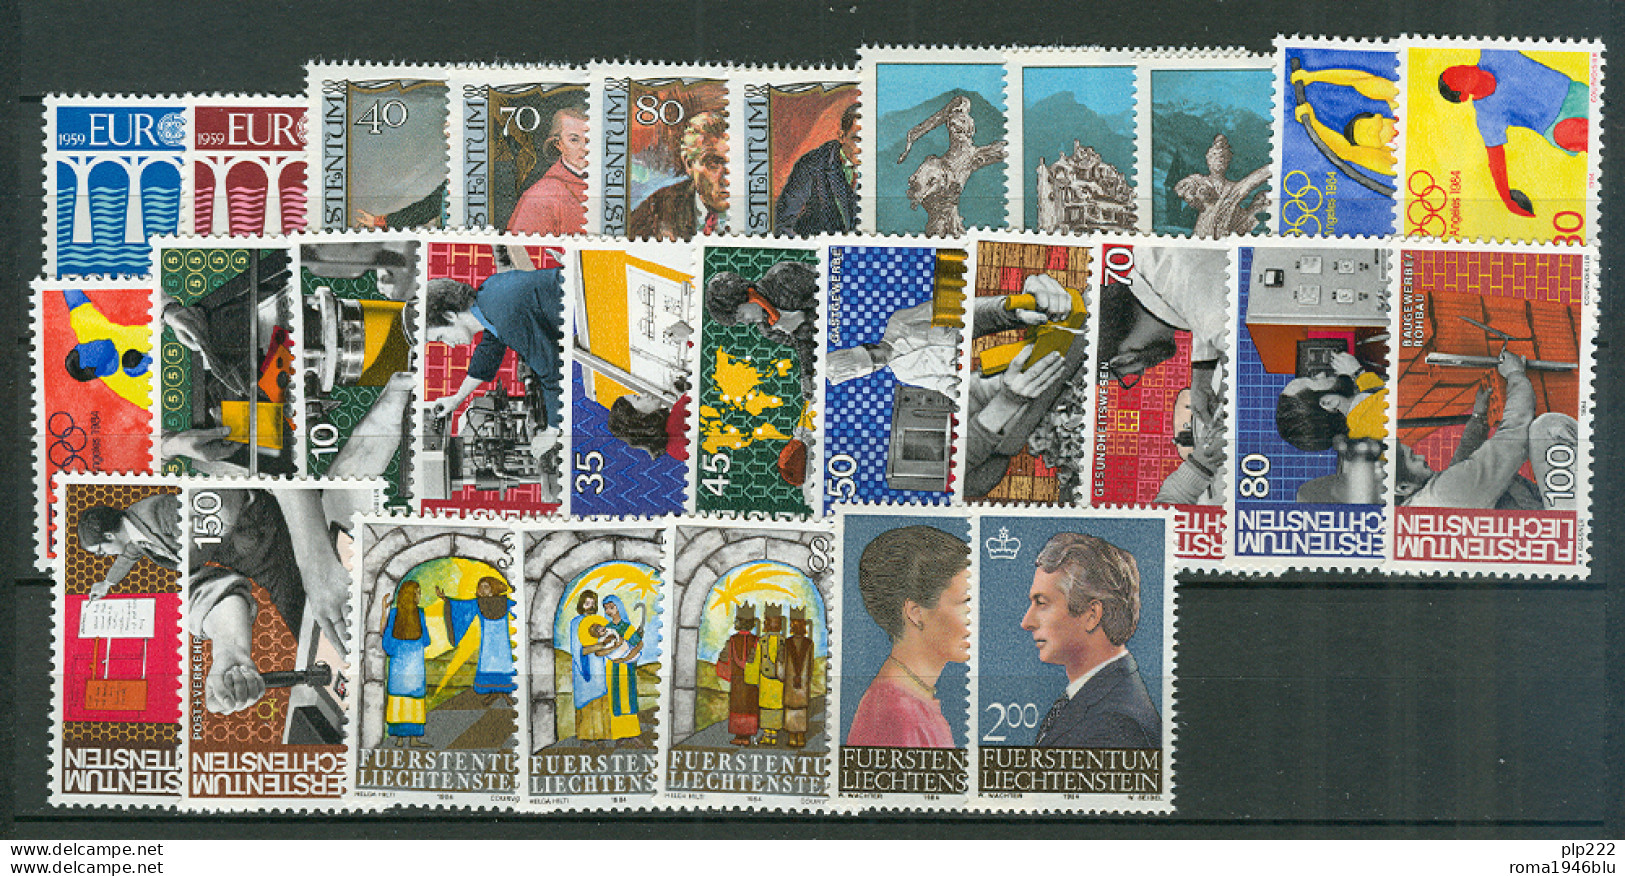 Liechtenstein 1984 Annata Completa / Complete Year Set **/MNH VF - Annate Complete